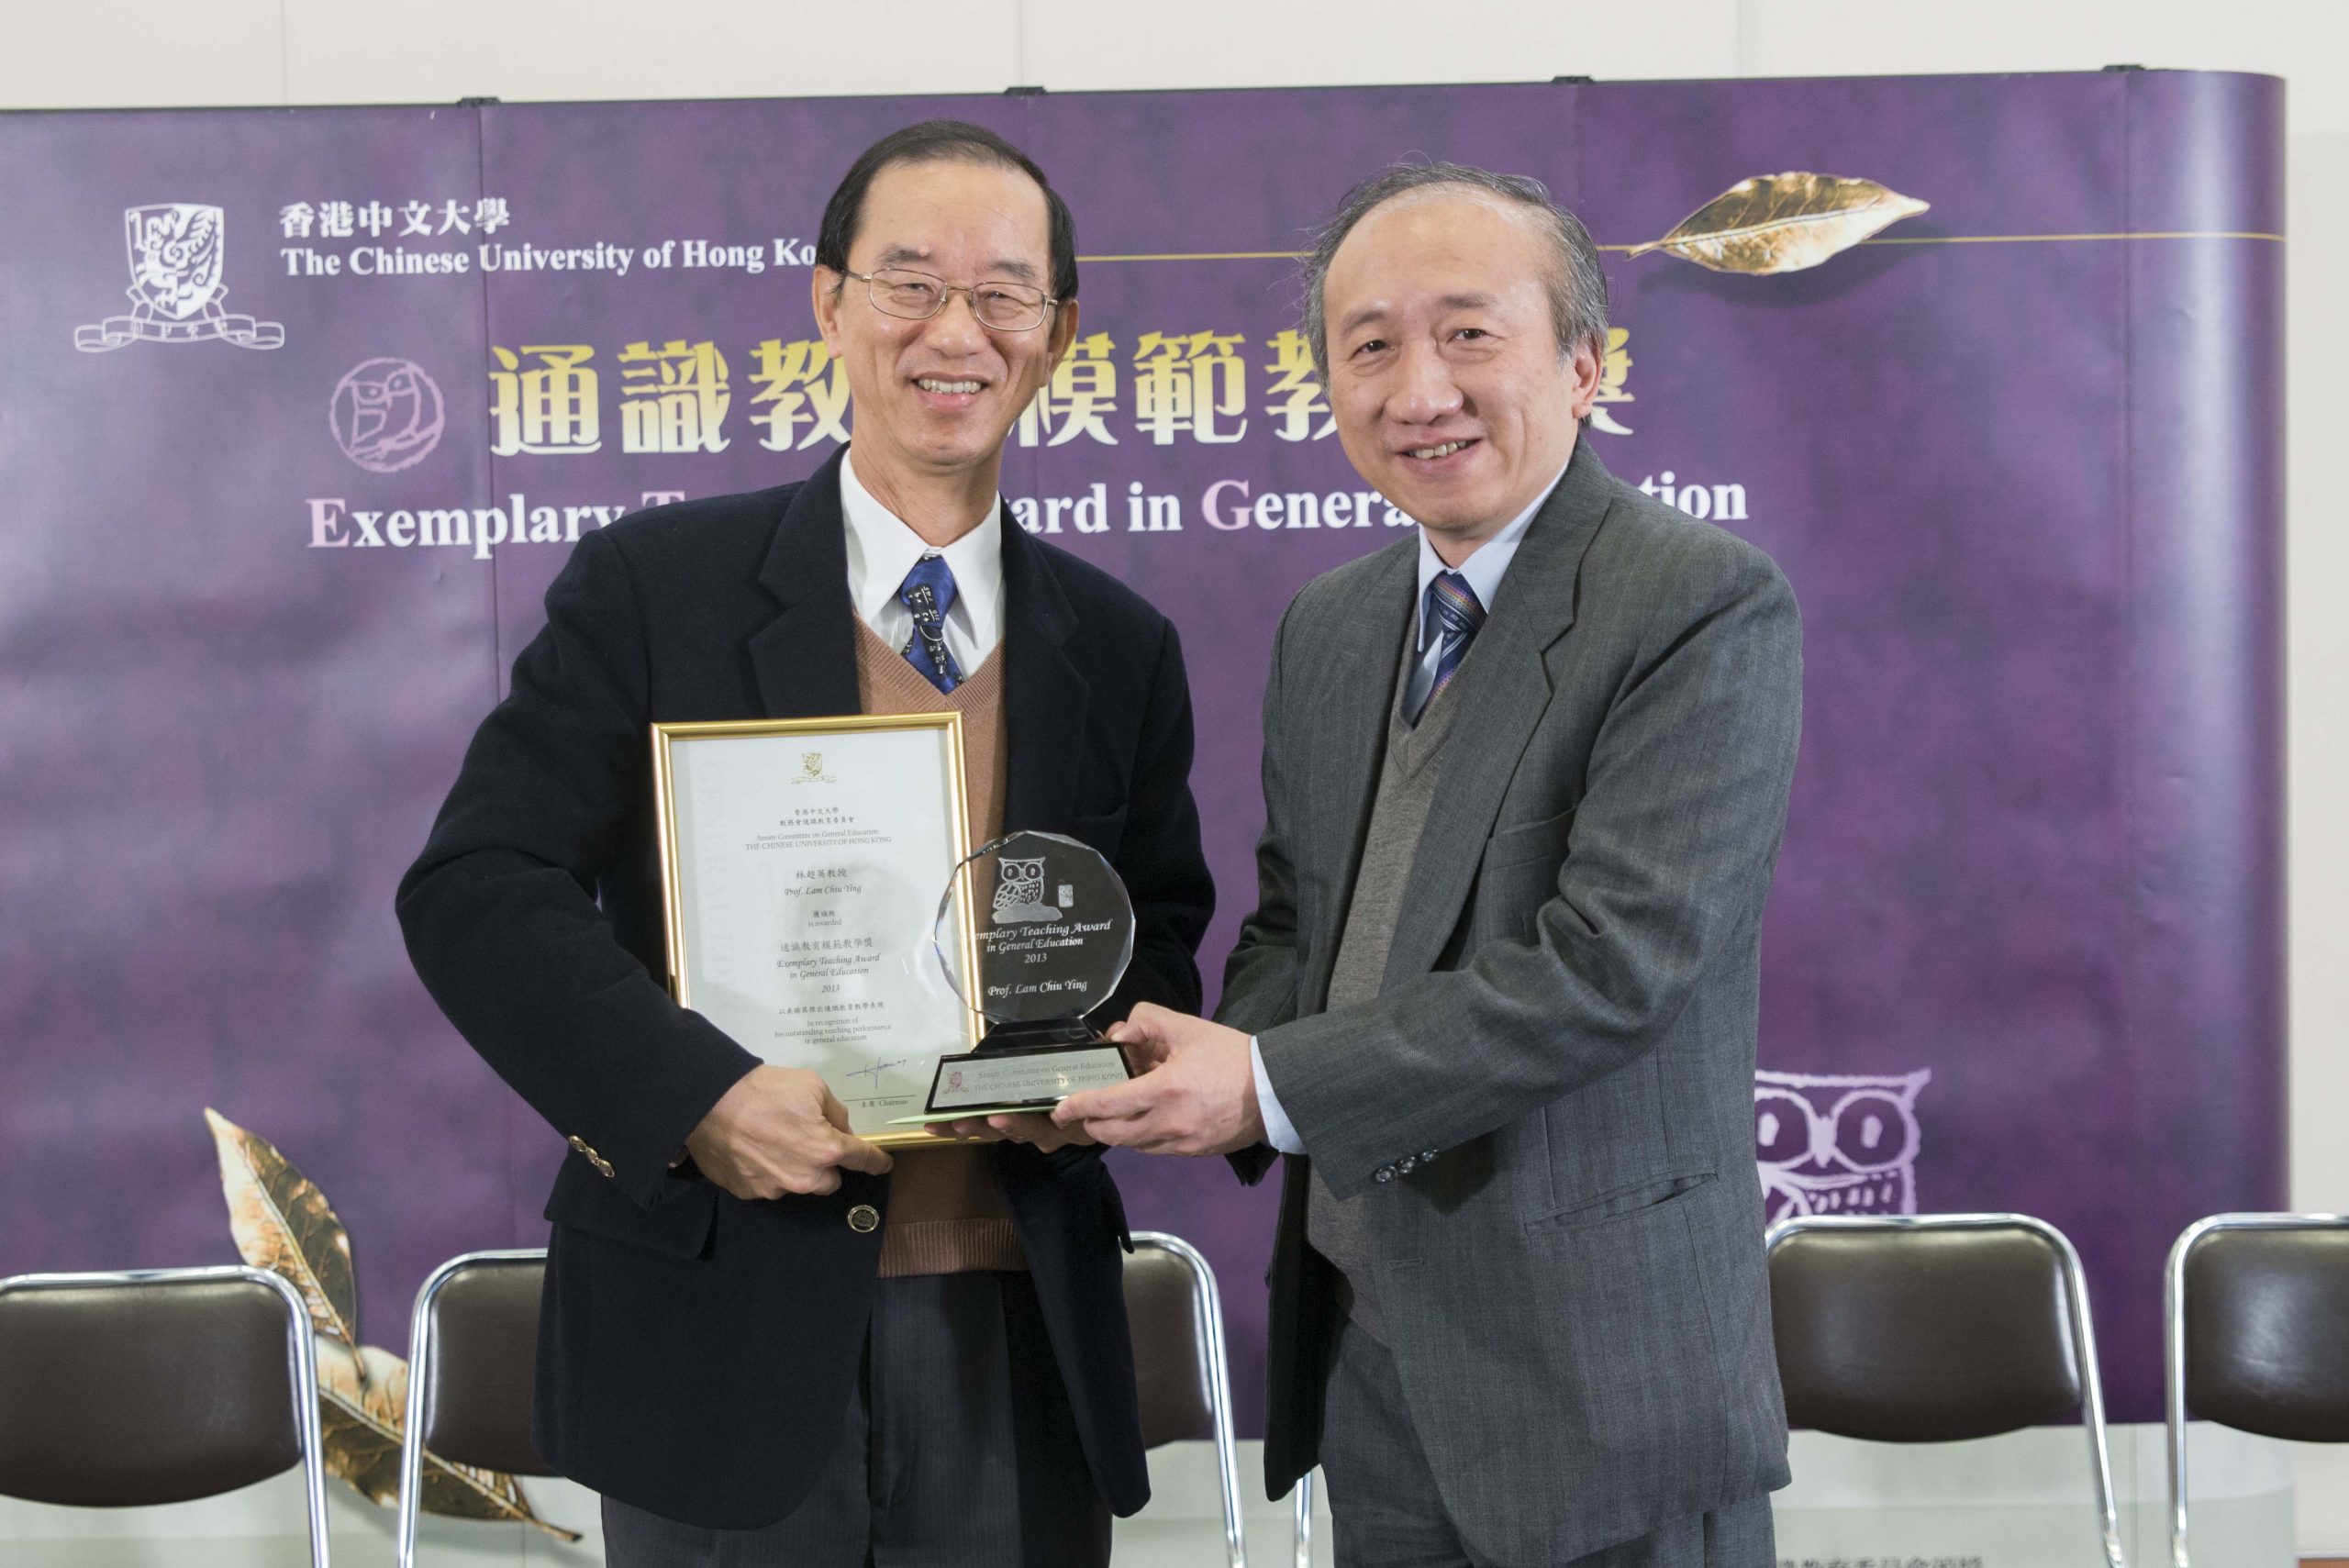 Presentation of Exemplary Teaching Award to Prof. Lam Chiu Ying